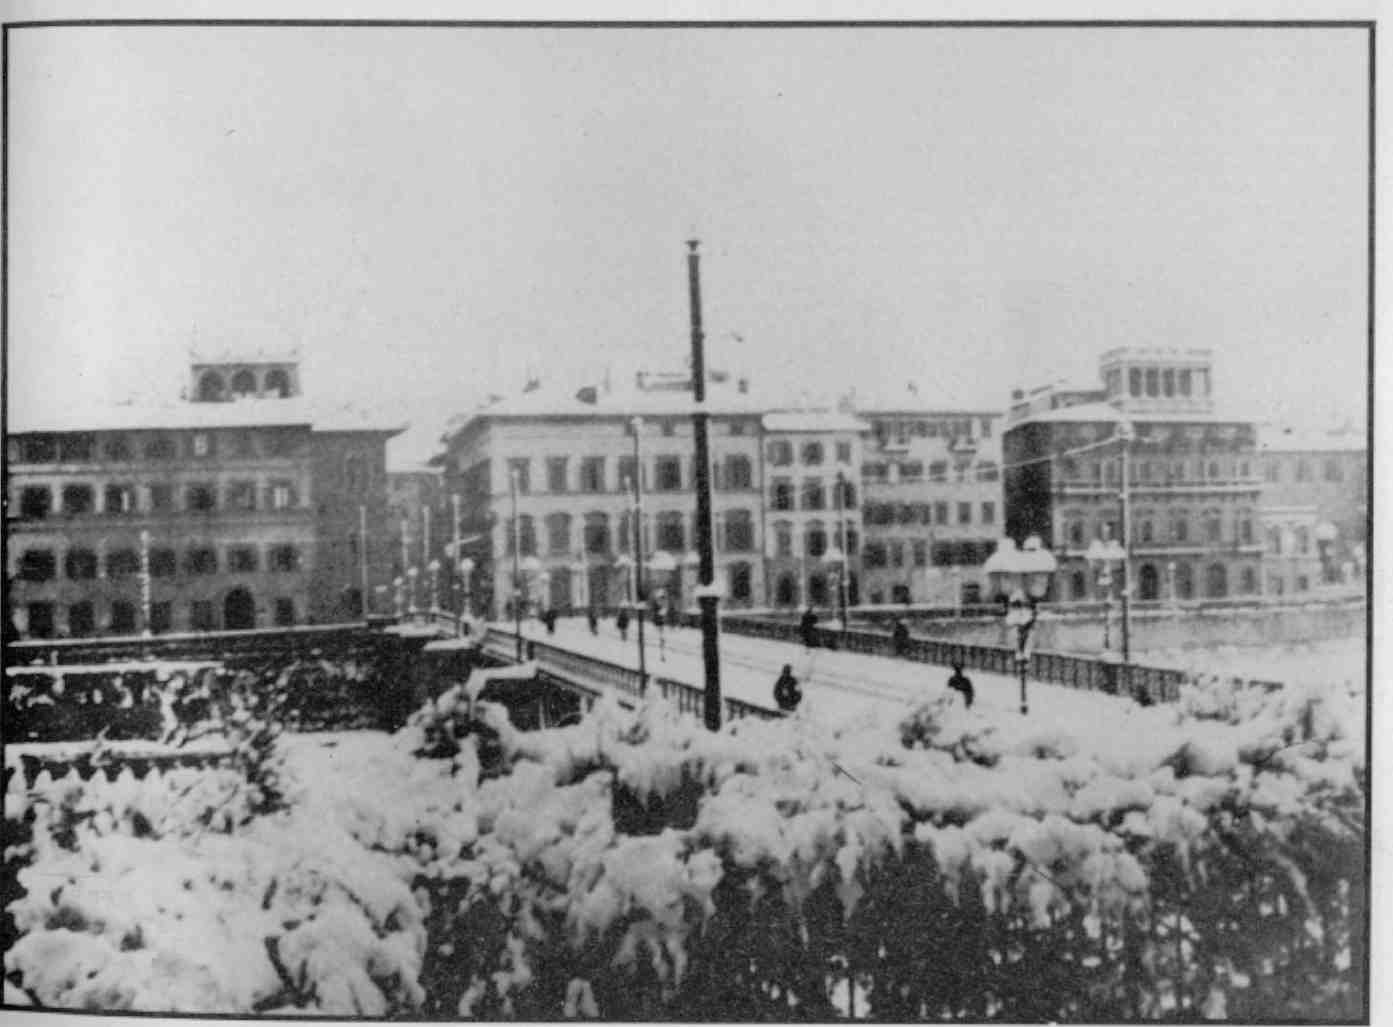 neve a firenze nel 1929, ponte alle grazie